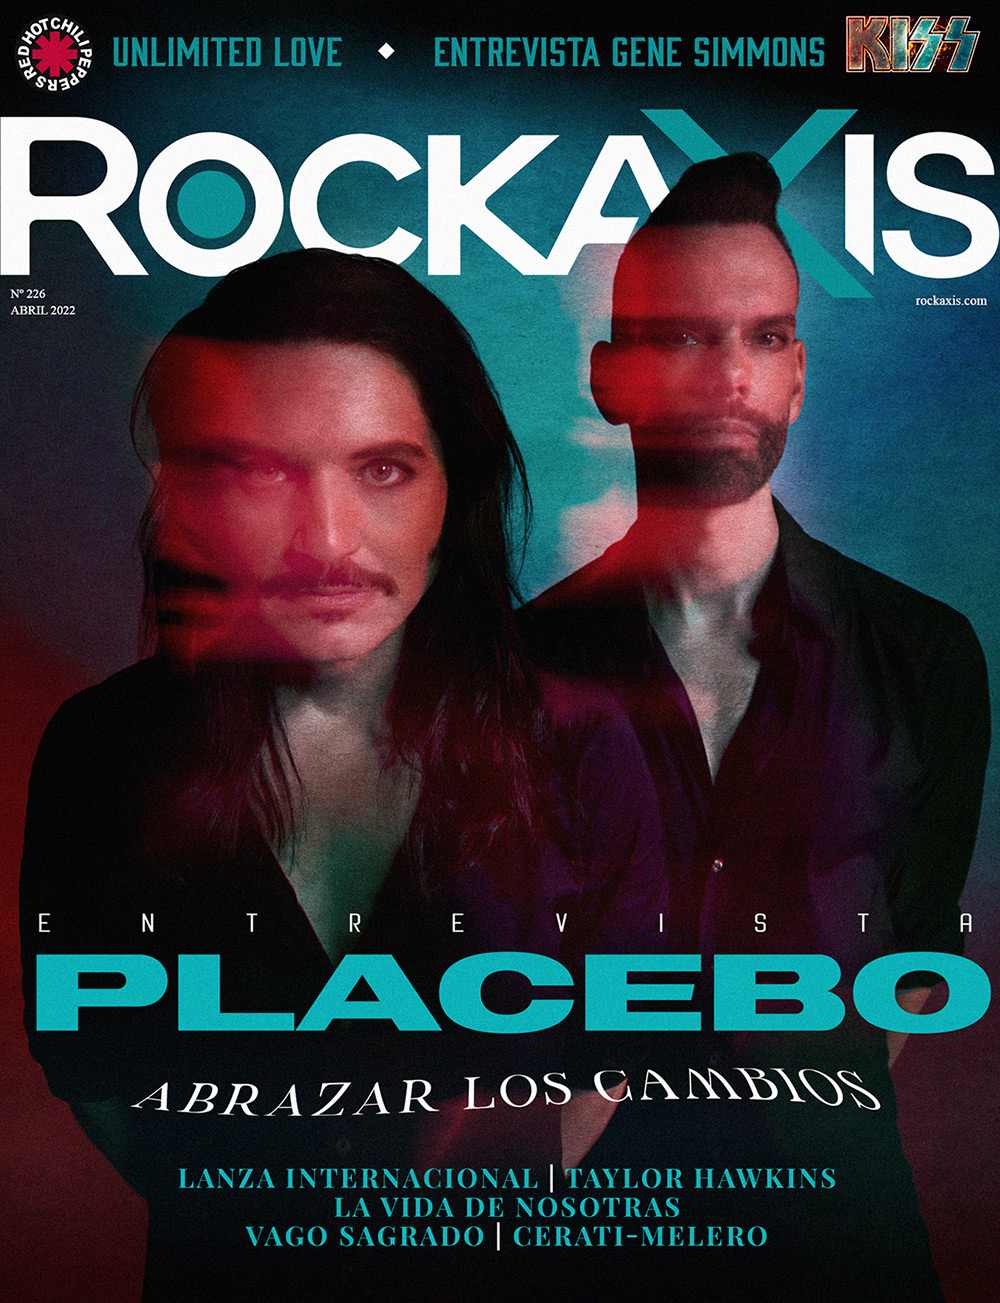 Rockaxis #226